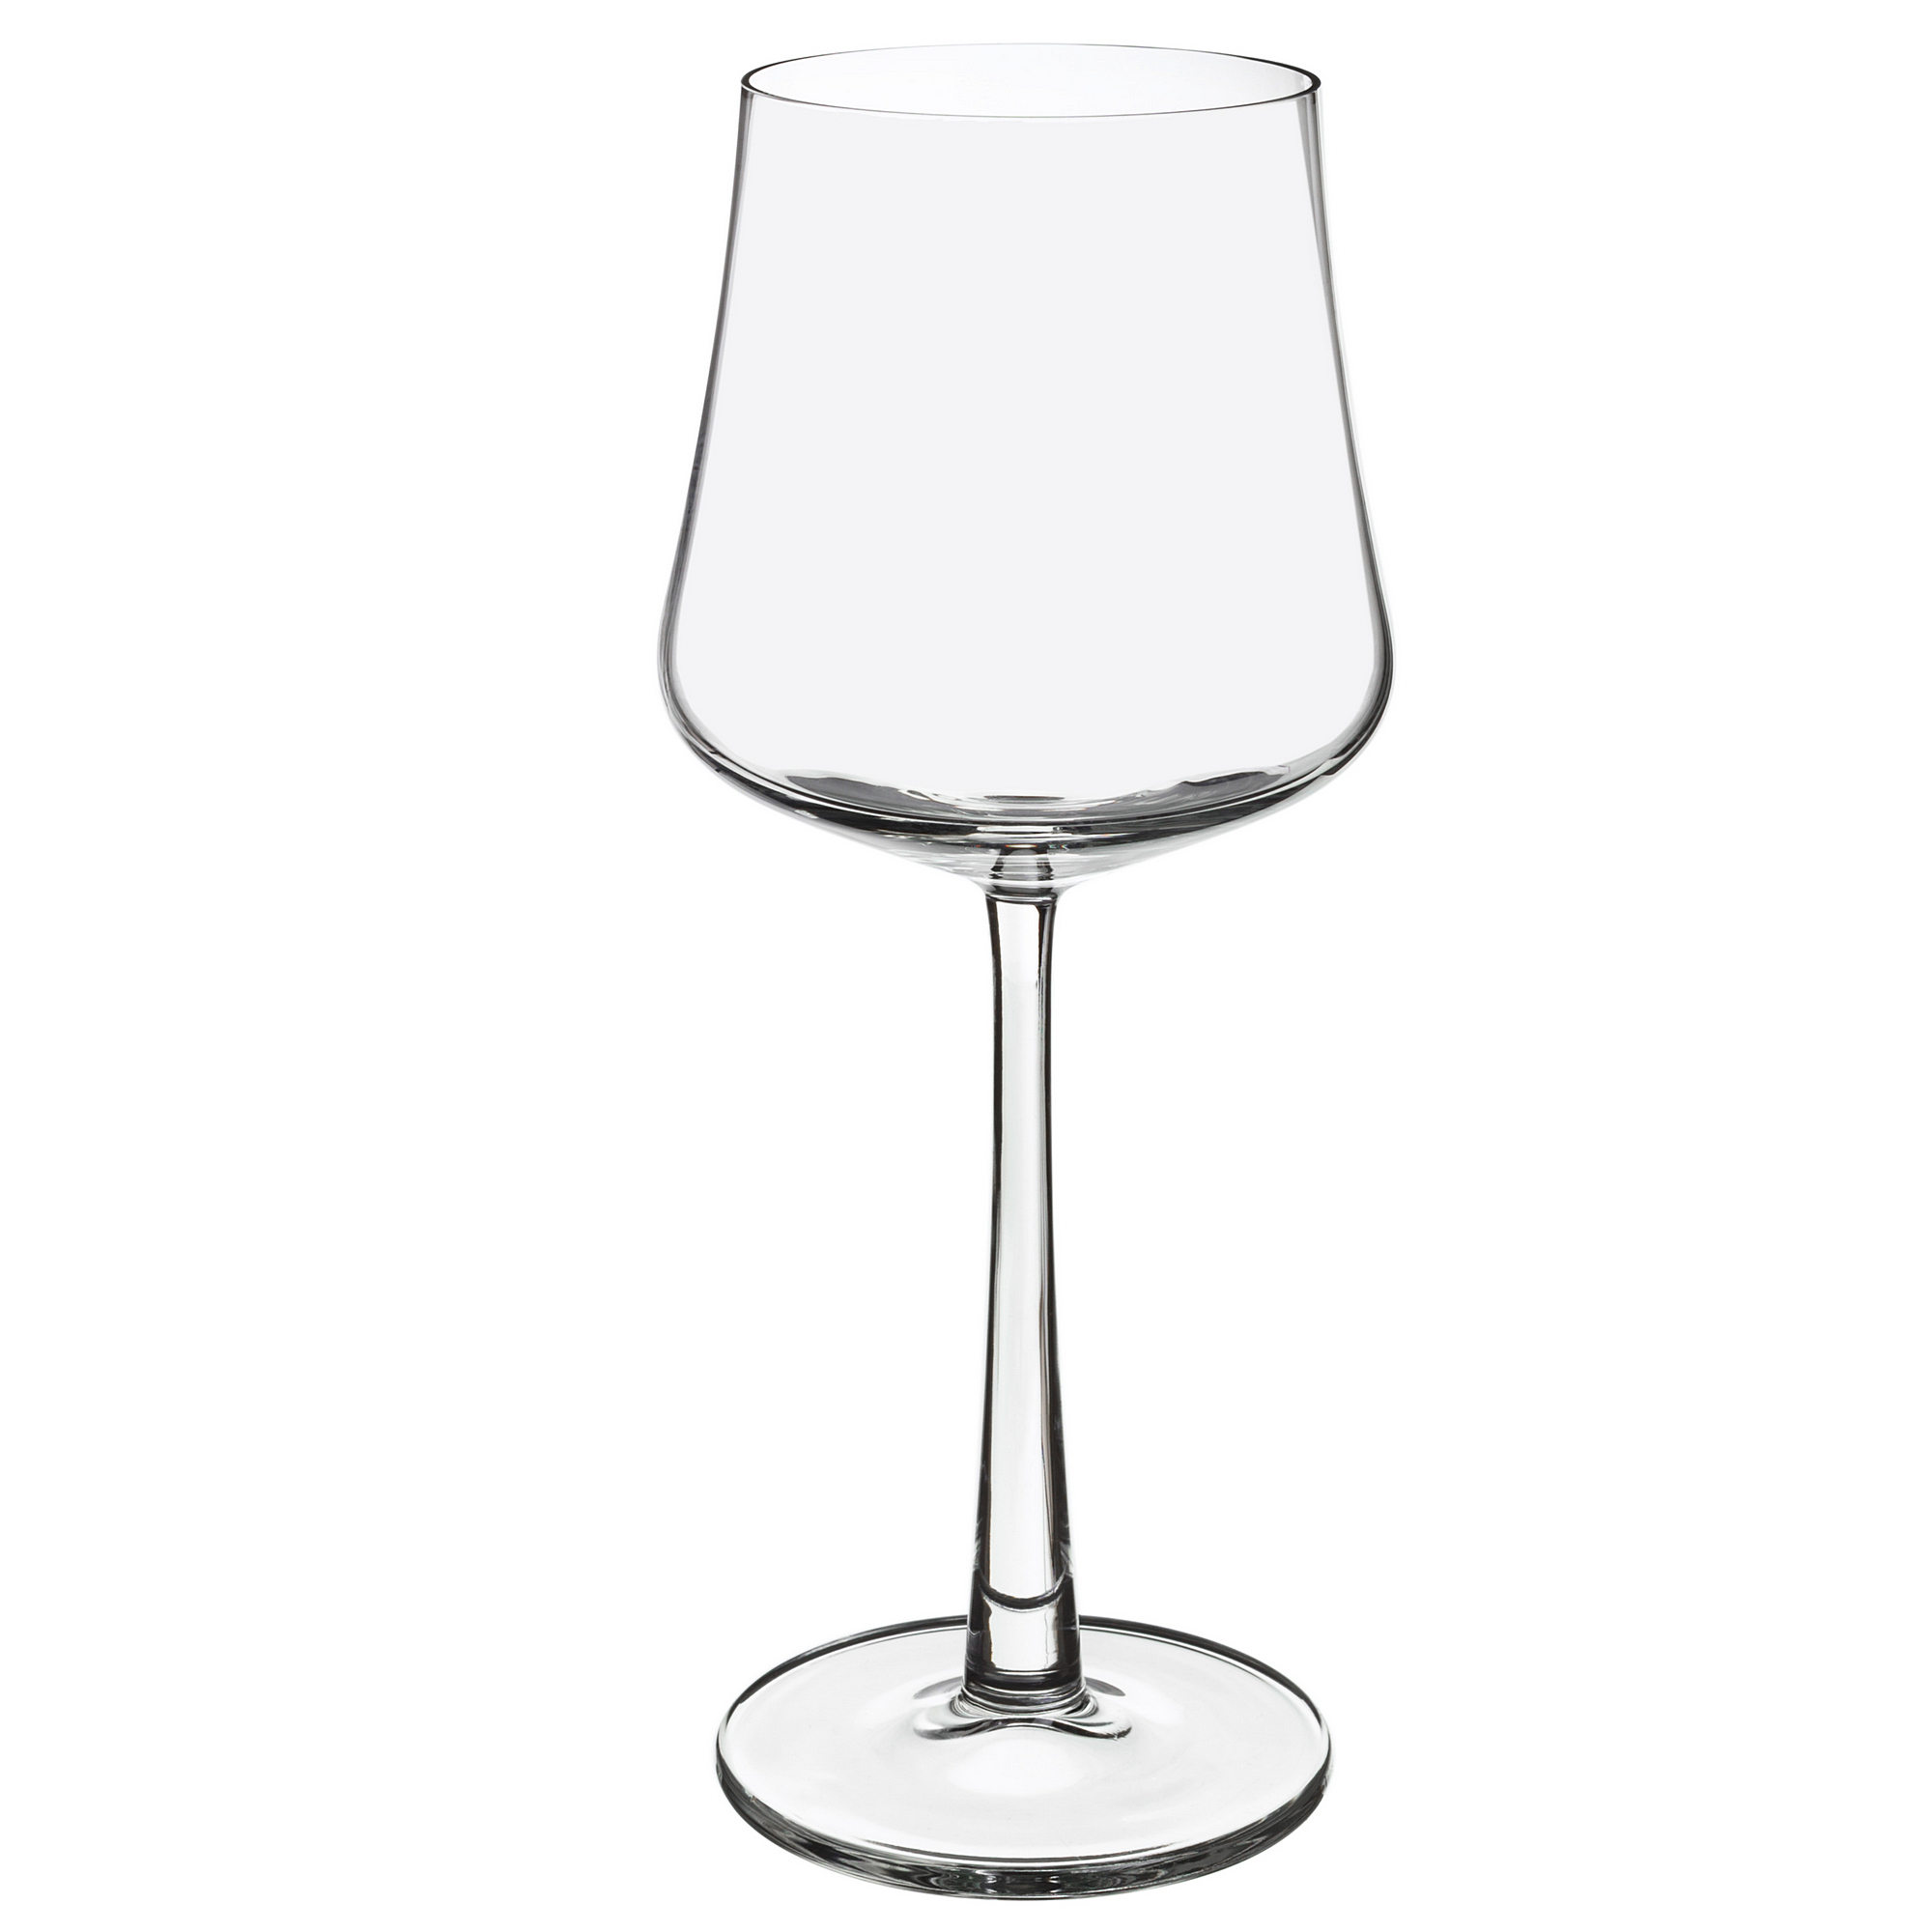 Набор бокалов для белого вина 4шт 290мл Royal leerdam novum 383522